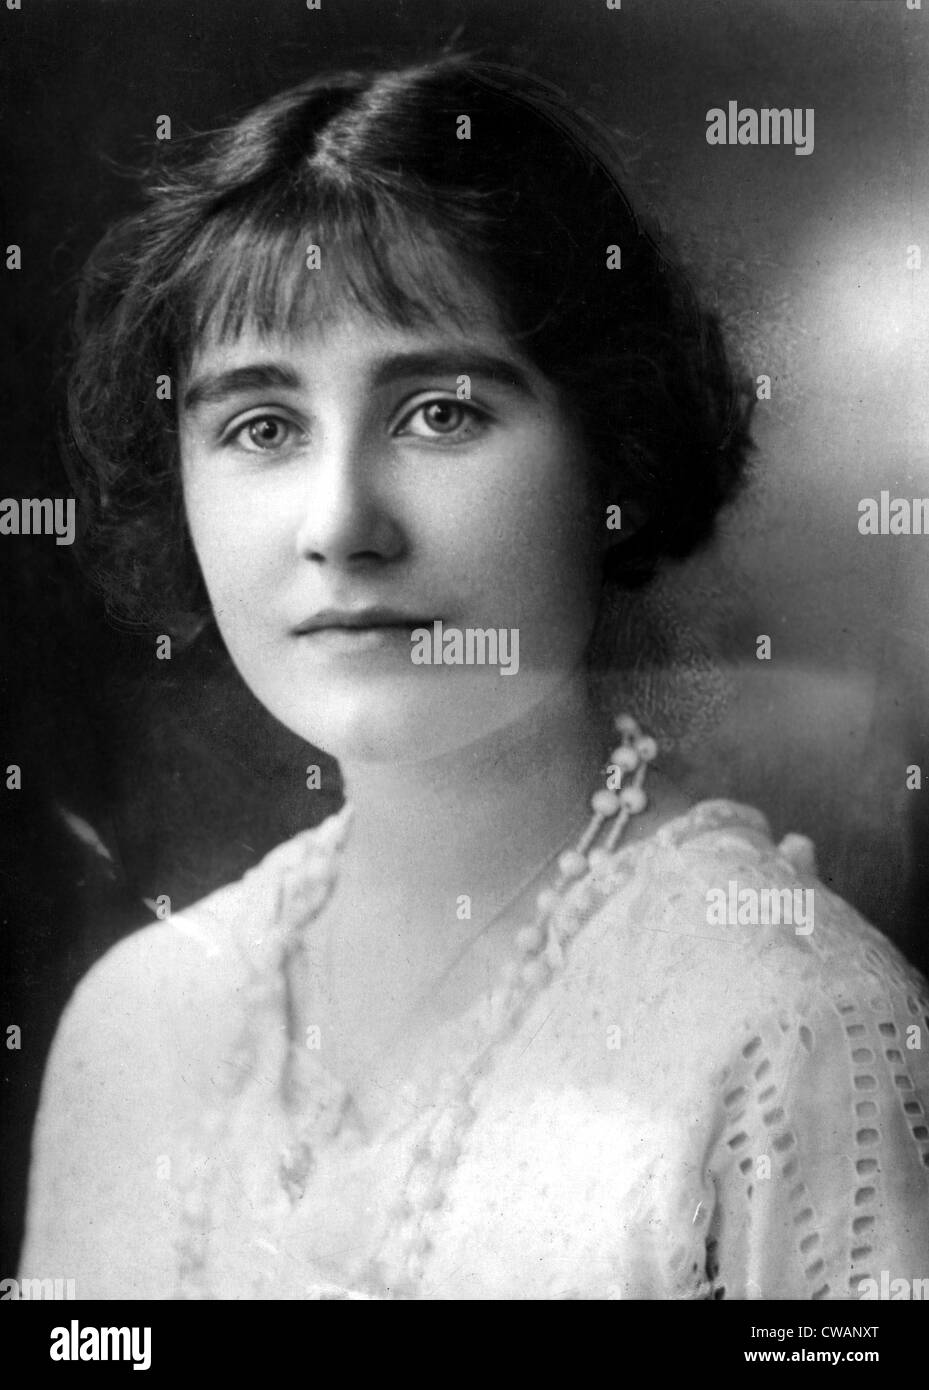 Königin-Mutter, ehemals Lady Elizabeth Bowles-Lyon Duchess of York, ca. 1923. Höflichkeit: CSU Archive / Everett Collection Stockfoto